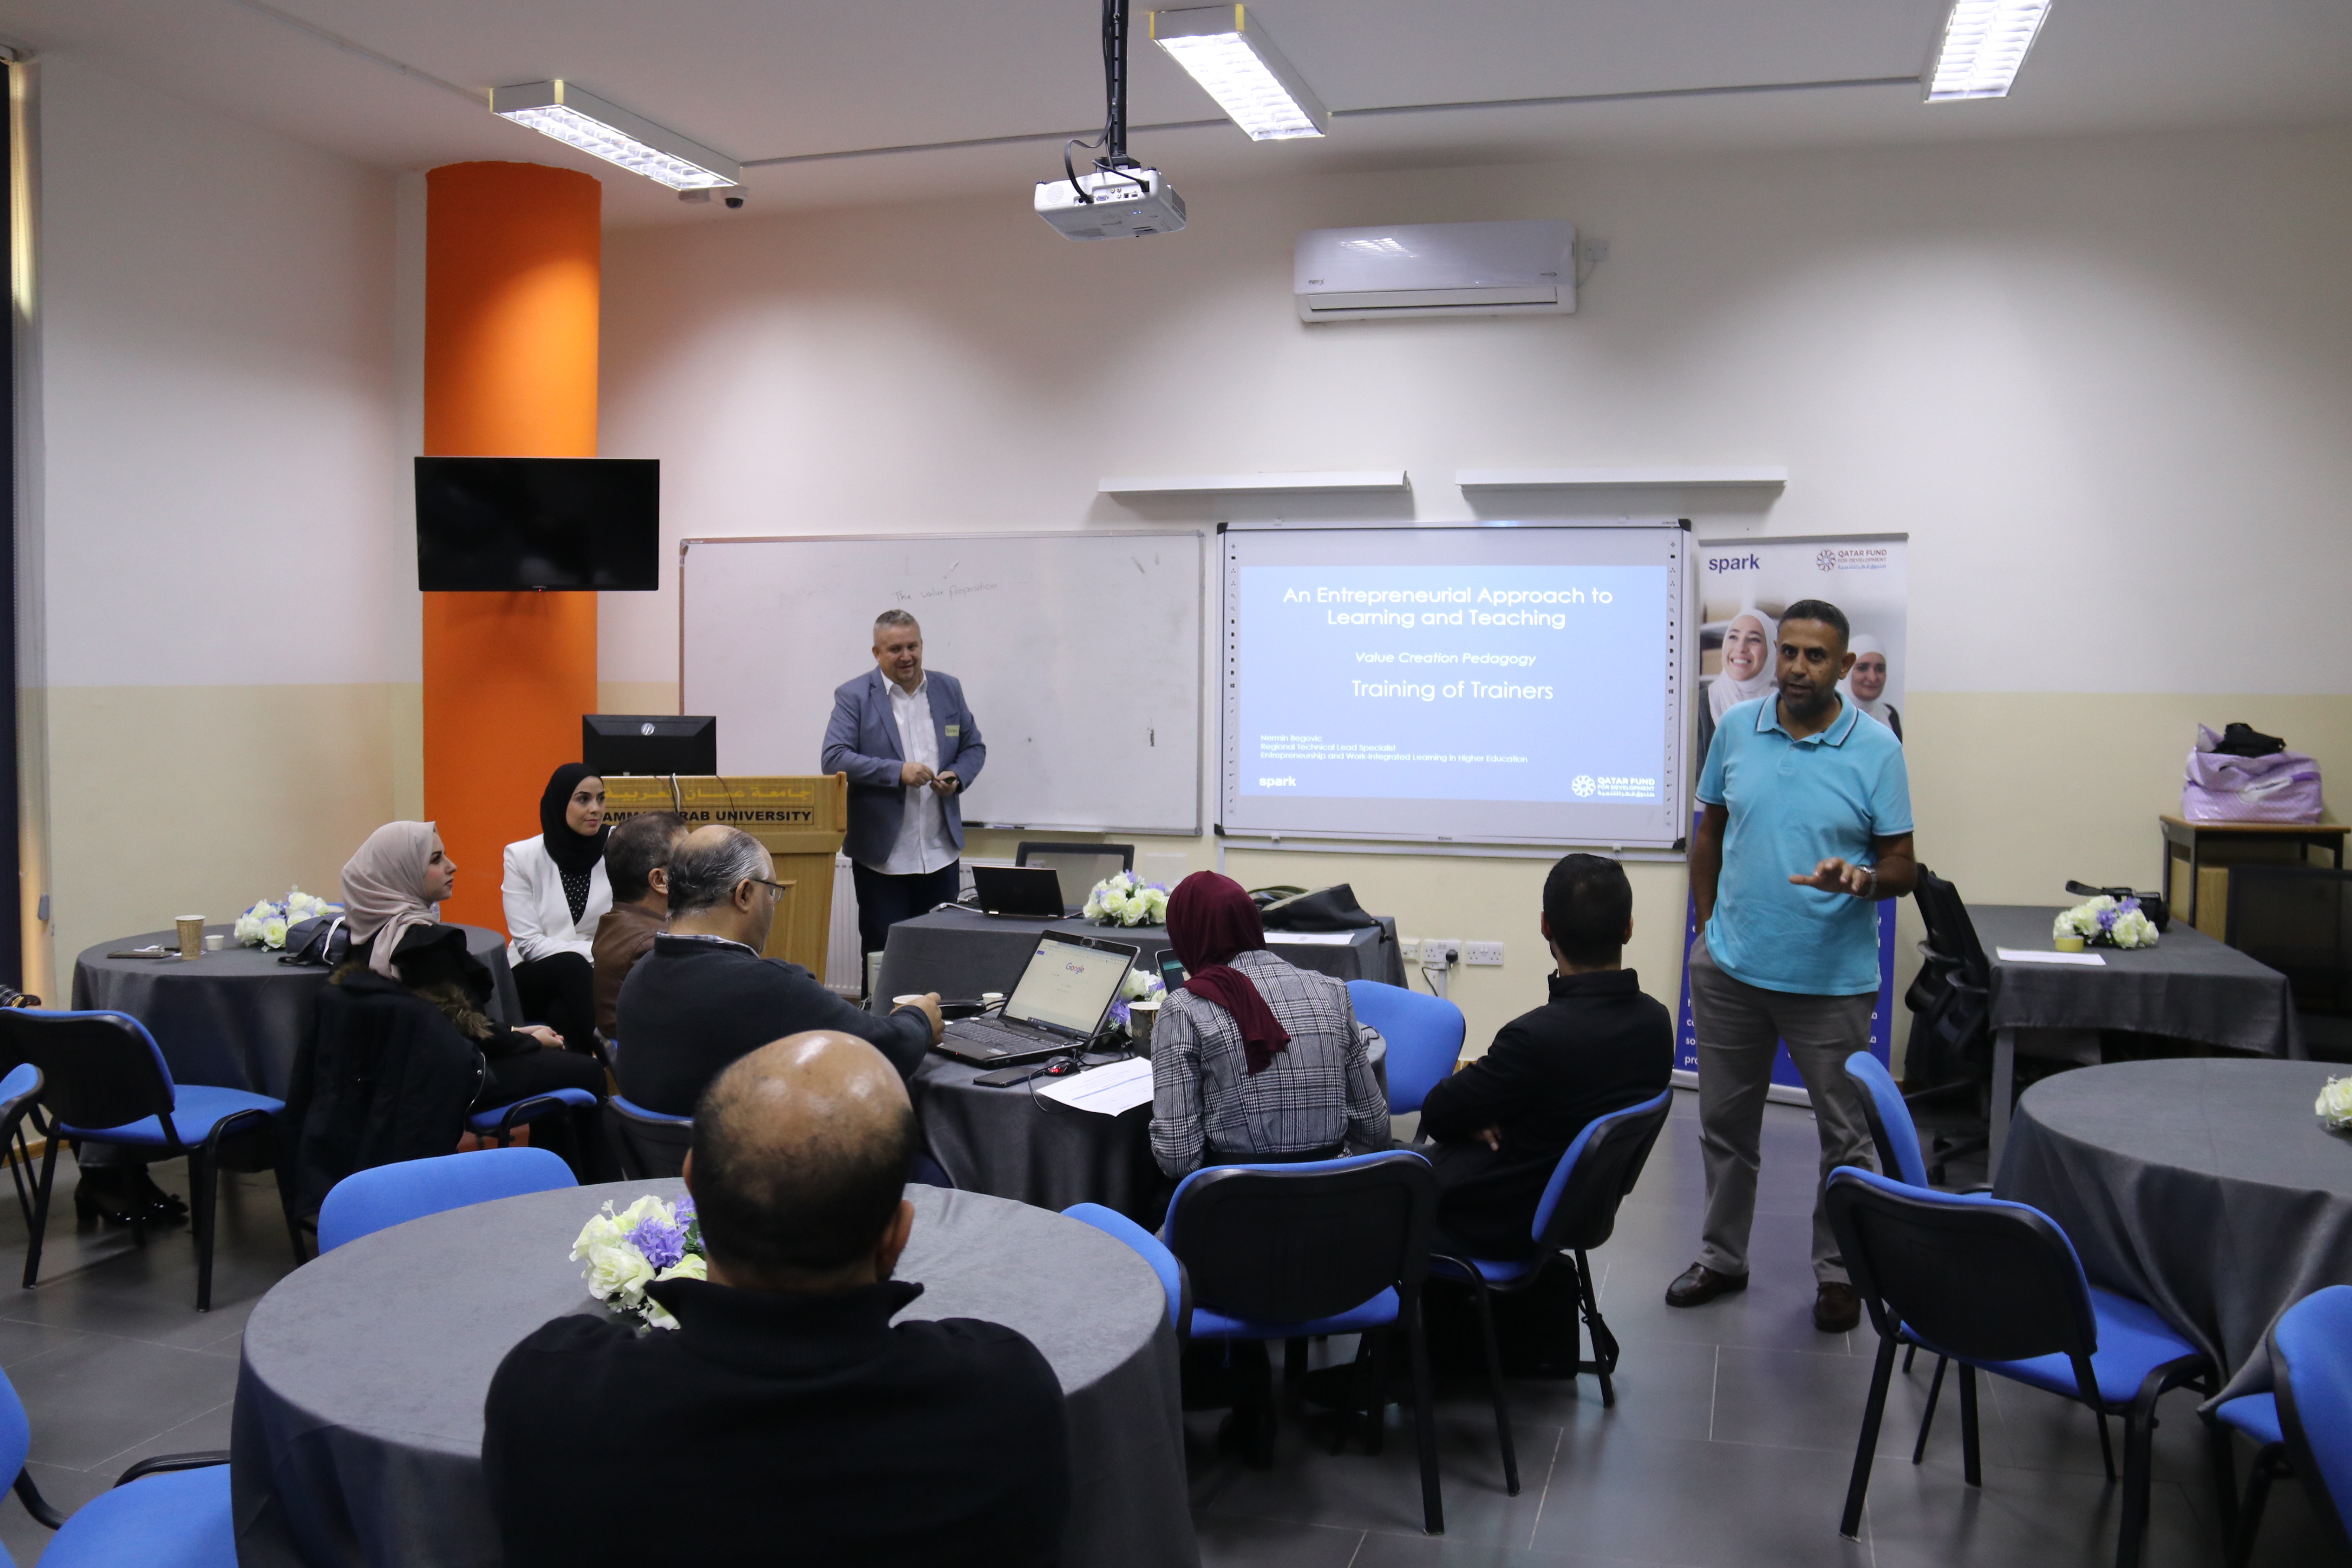 برنامج تدريبي مشترك بين "عمان العربية" ومنظمة سبارك حول خلق القيمة المضافة1